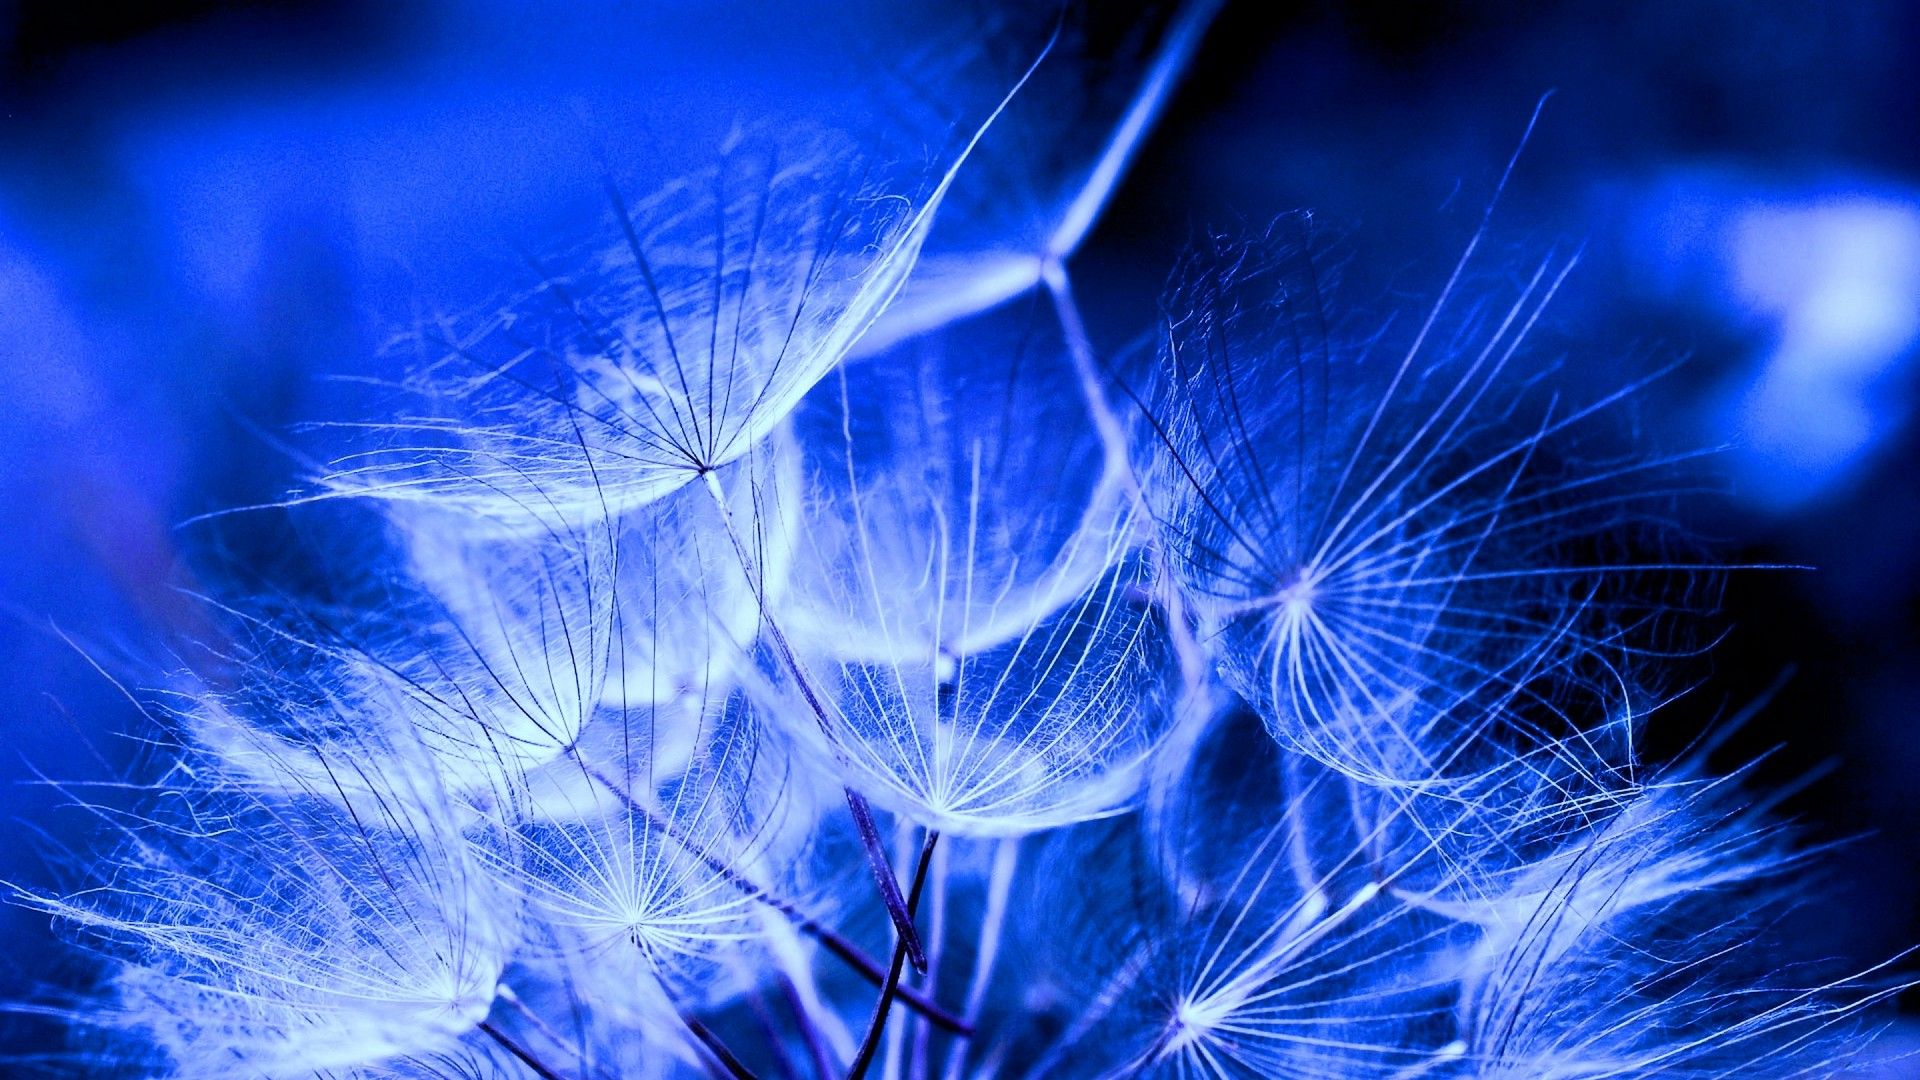 A close up of some blue dandelions - Indigo